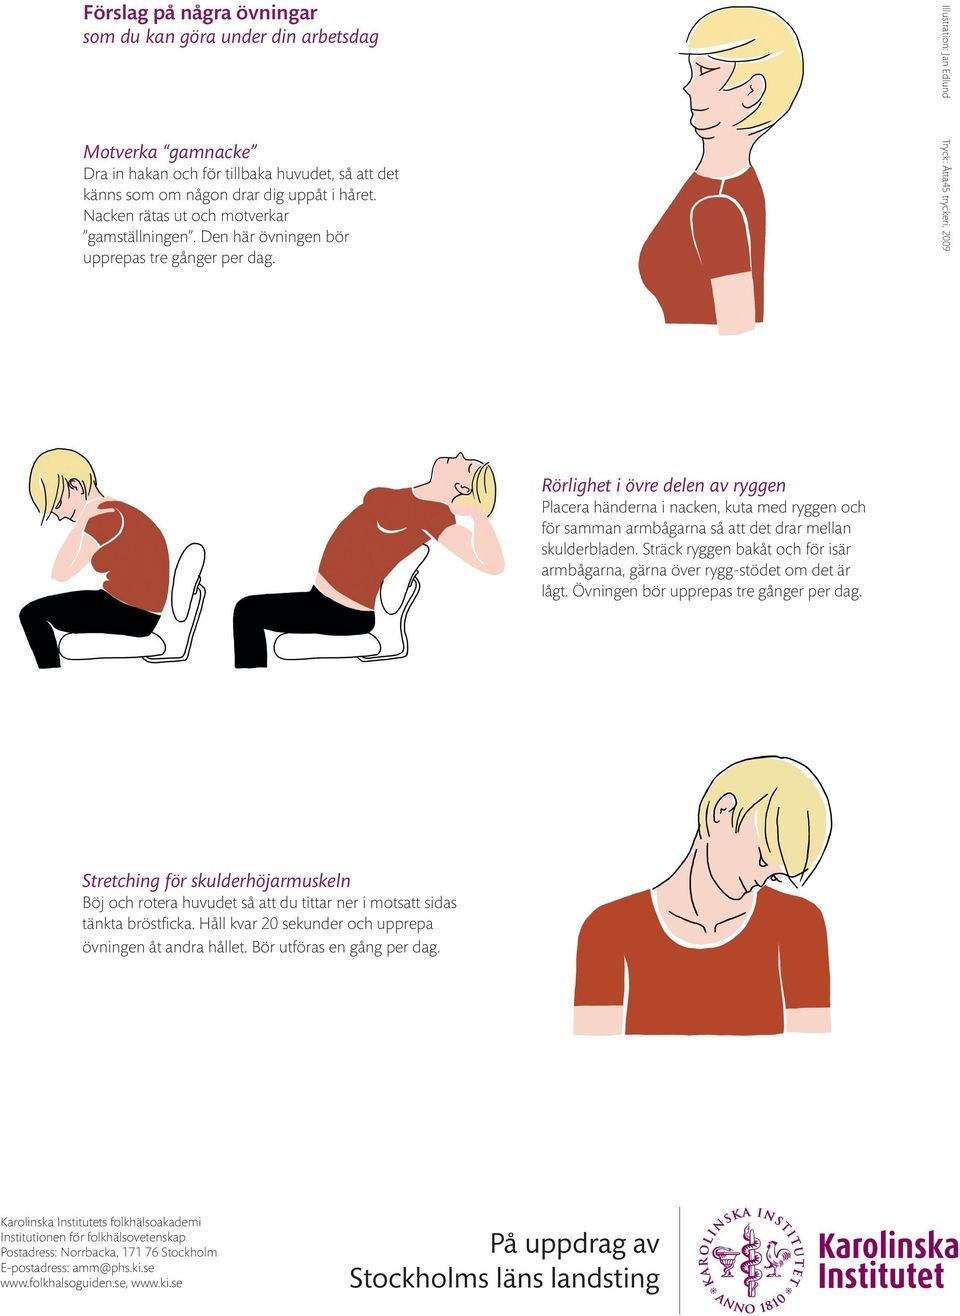 Illustration: Jan Edlund Tryck: Åtta45 tryckeri, 2009 Rörlighet i övre delen av ryggen Placera händerna i nacken, kuta med ryggen och för samman armbågarna så att det drar mellan skulderbladen.